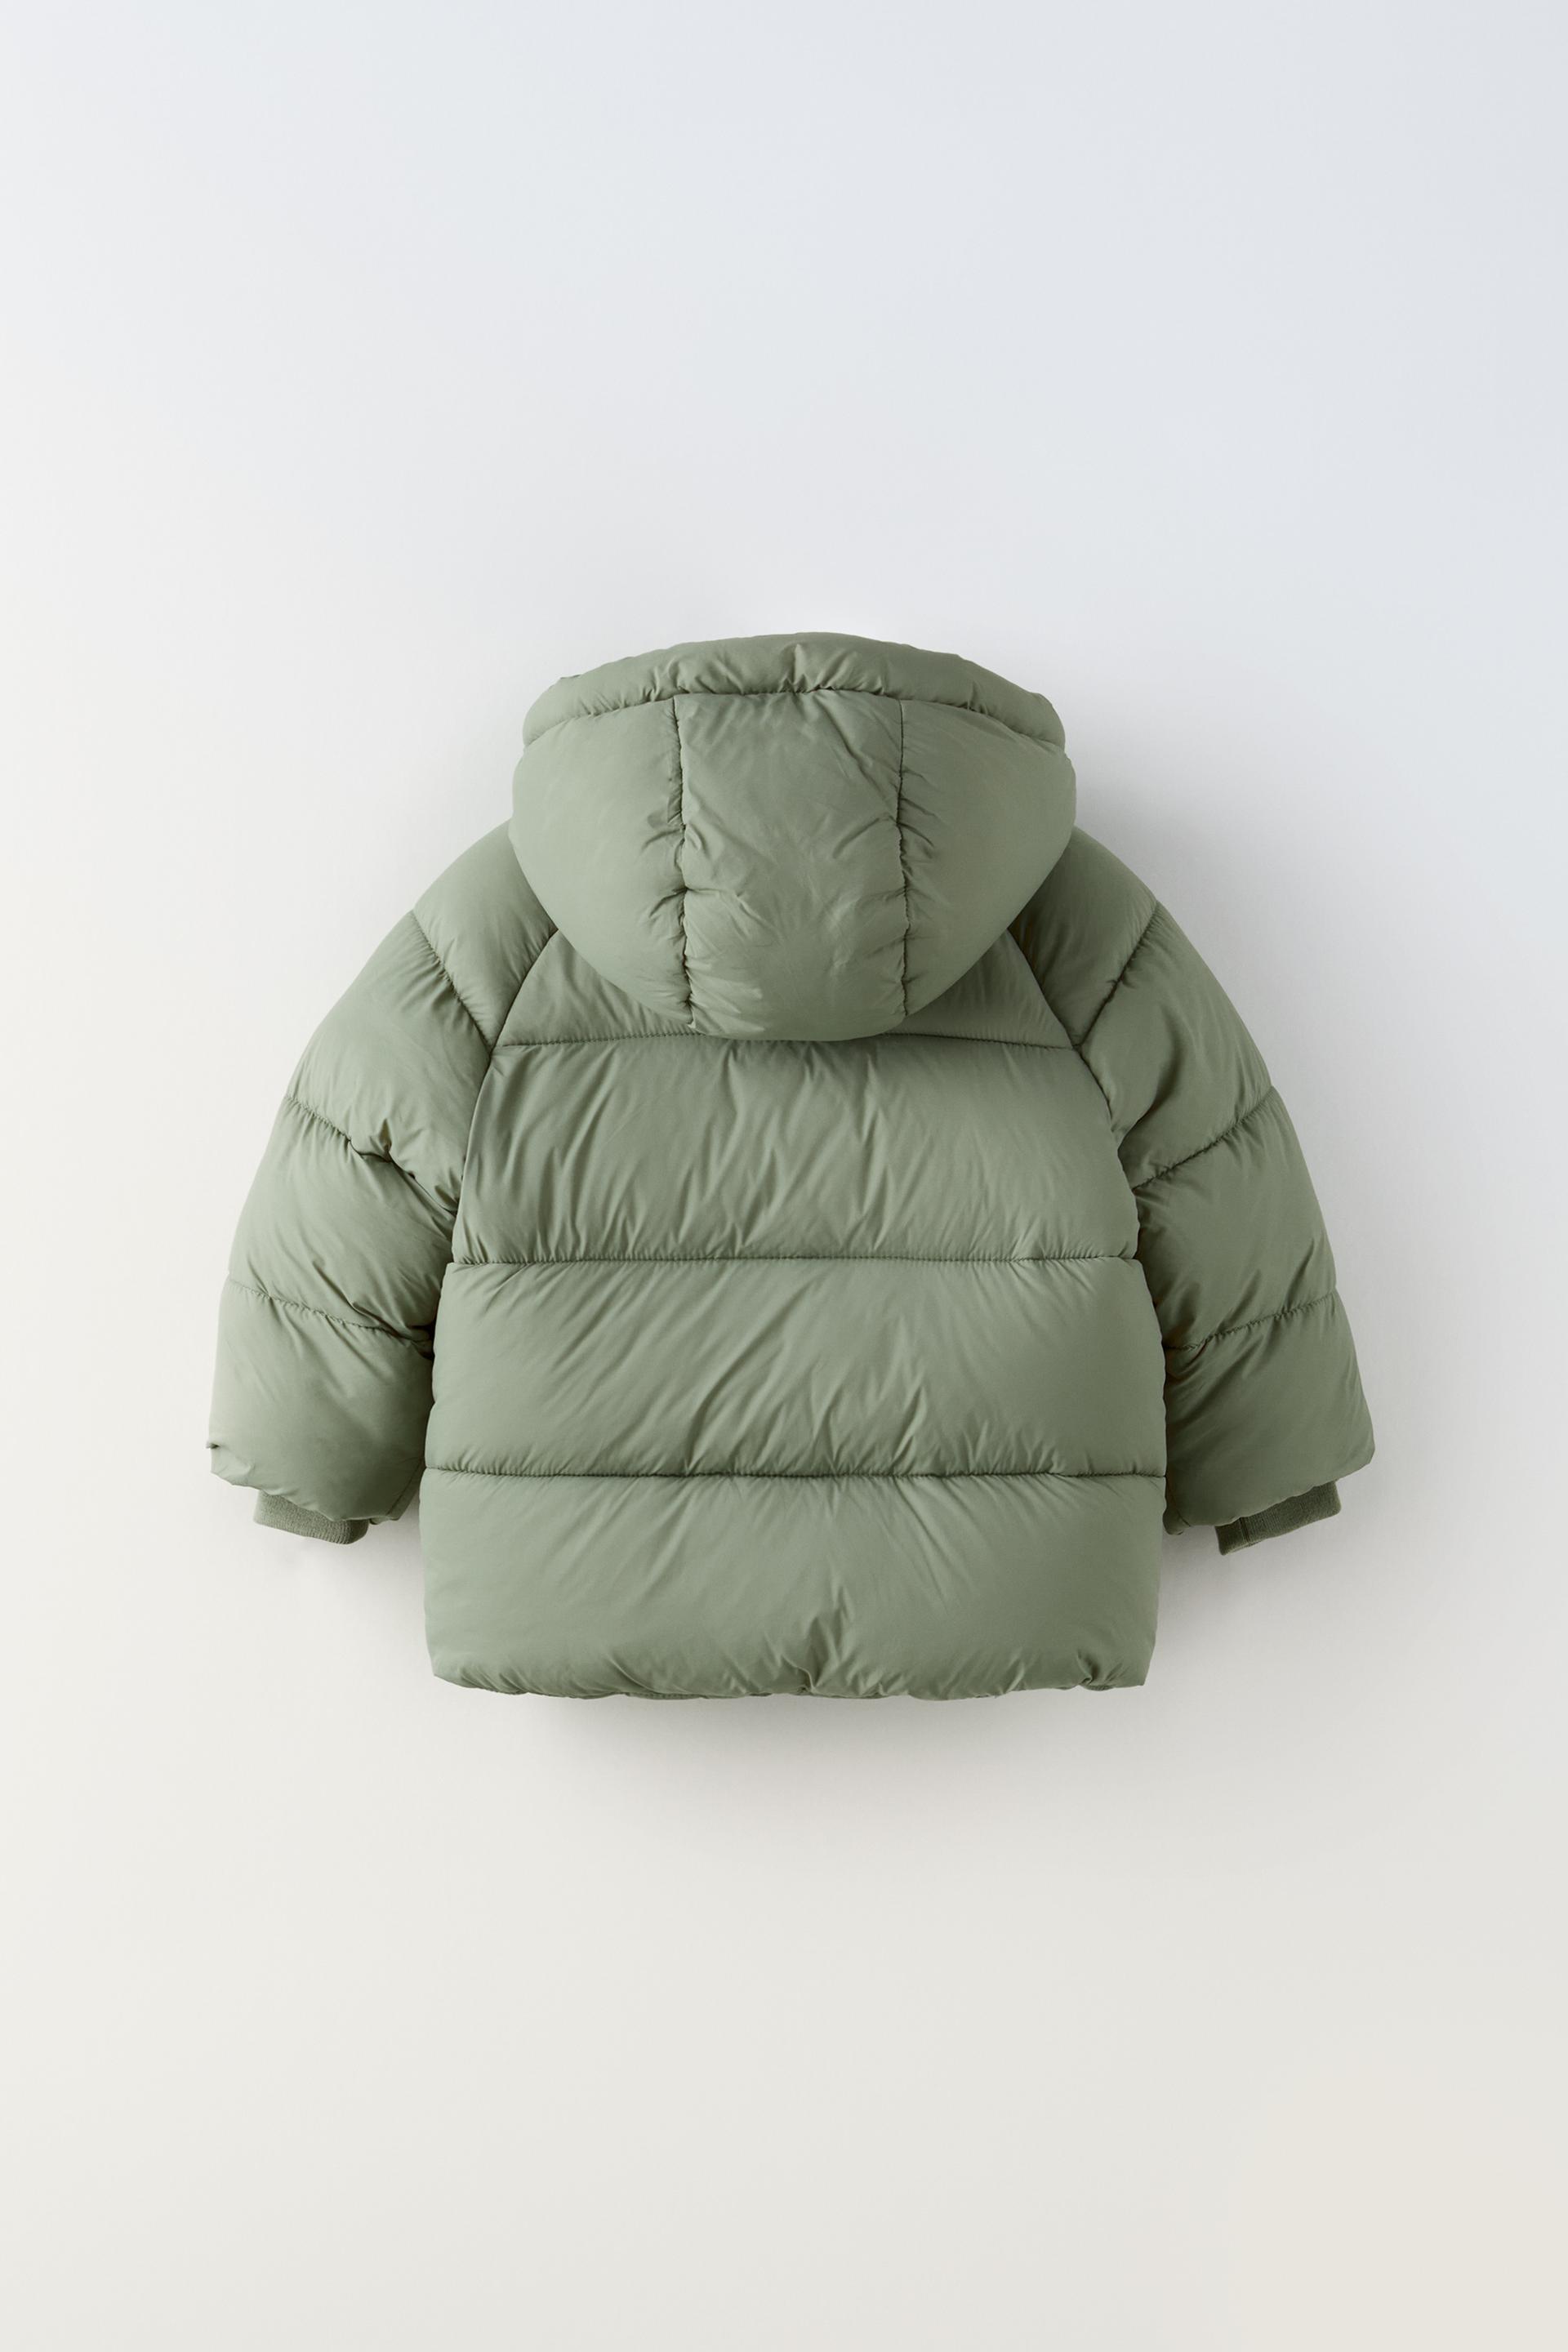 Zara agotará el abrigo acolchado e impermeable que afina la cintura y  llevarás todo el invierno